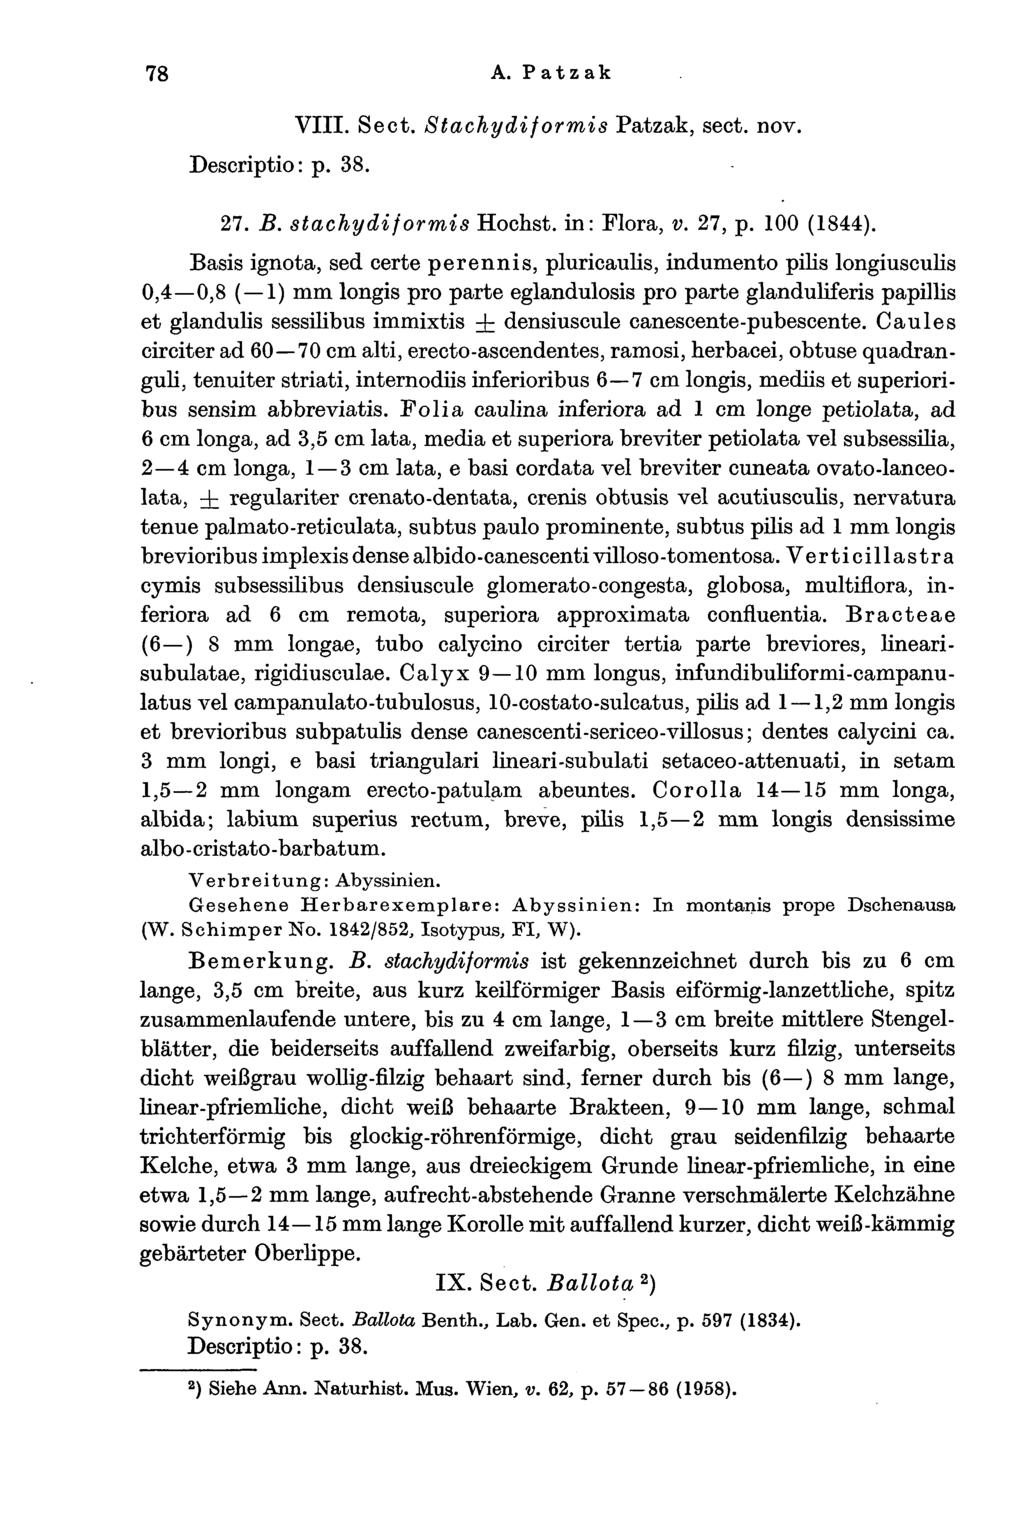 78 A. Patzak Descriptio: p. 38. VIII. Sect. Stachydiformis Patzak, sect. nov. 27. B. stachydiformis Höchst, in: Flora, v. 27, p. 100 (1844).